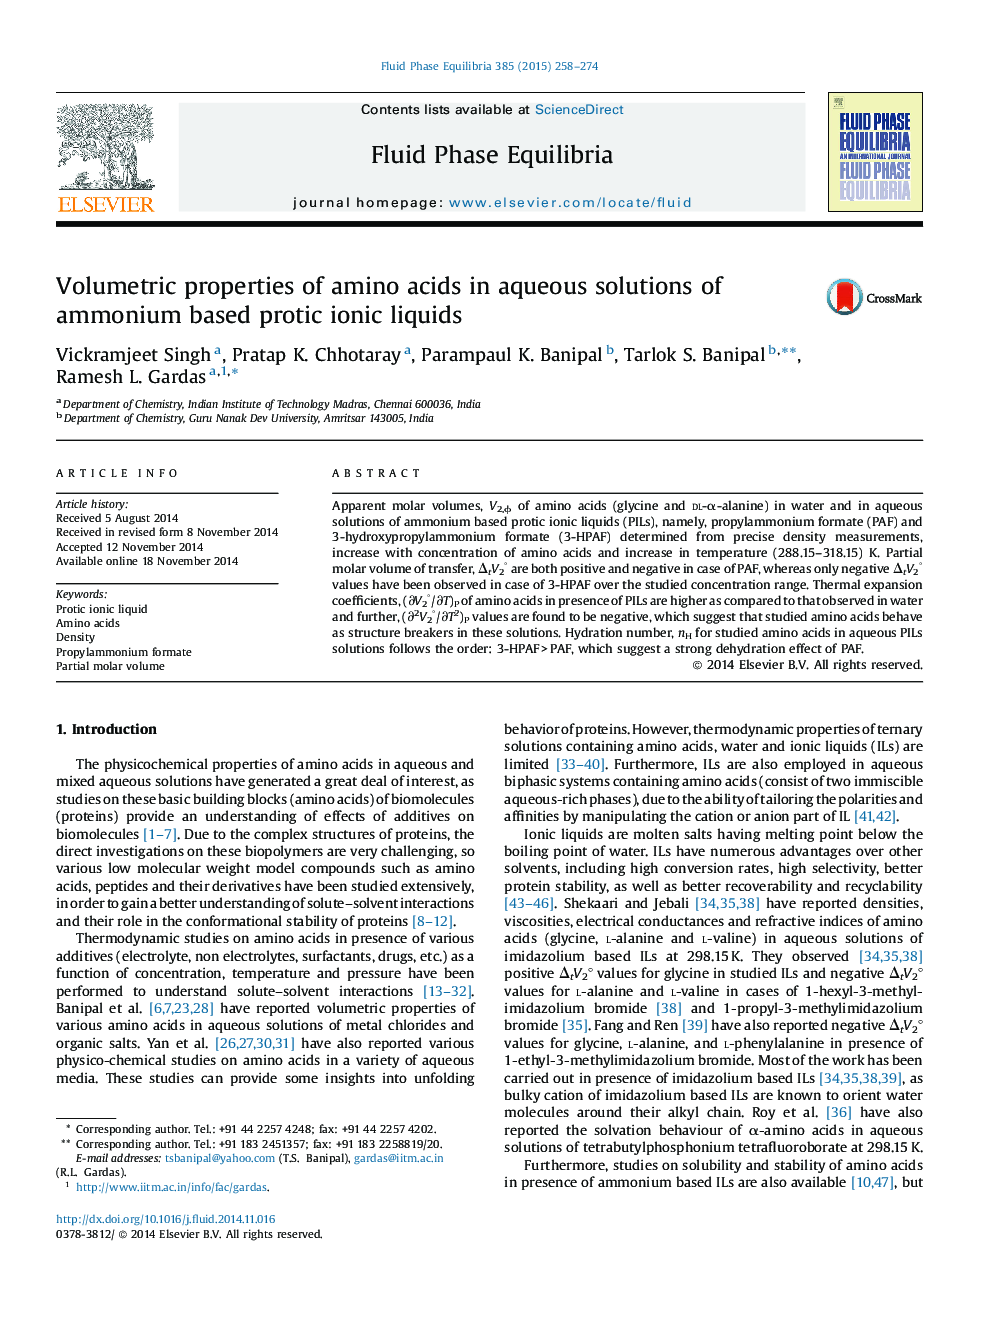 خواص حجمی اسیدهای آمینه در محلول های آبی مایکروویو پروتئین مبتنی بر آمونیم 